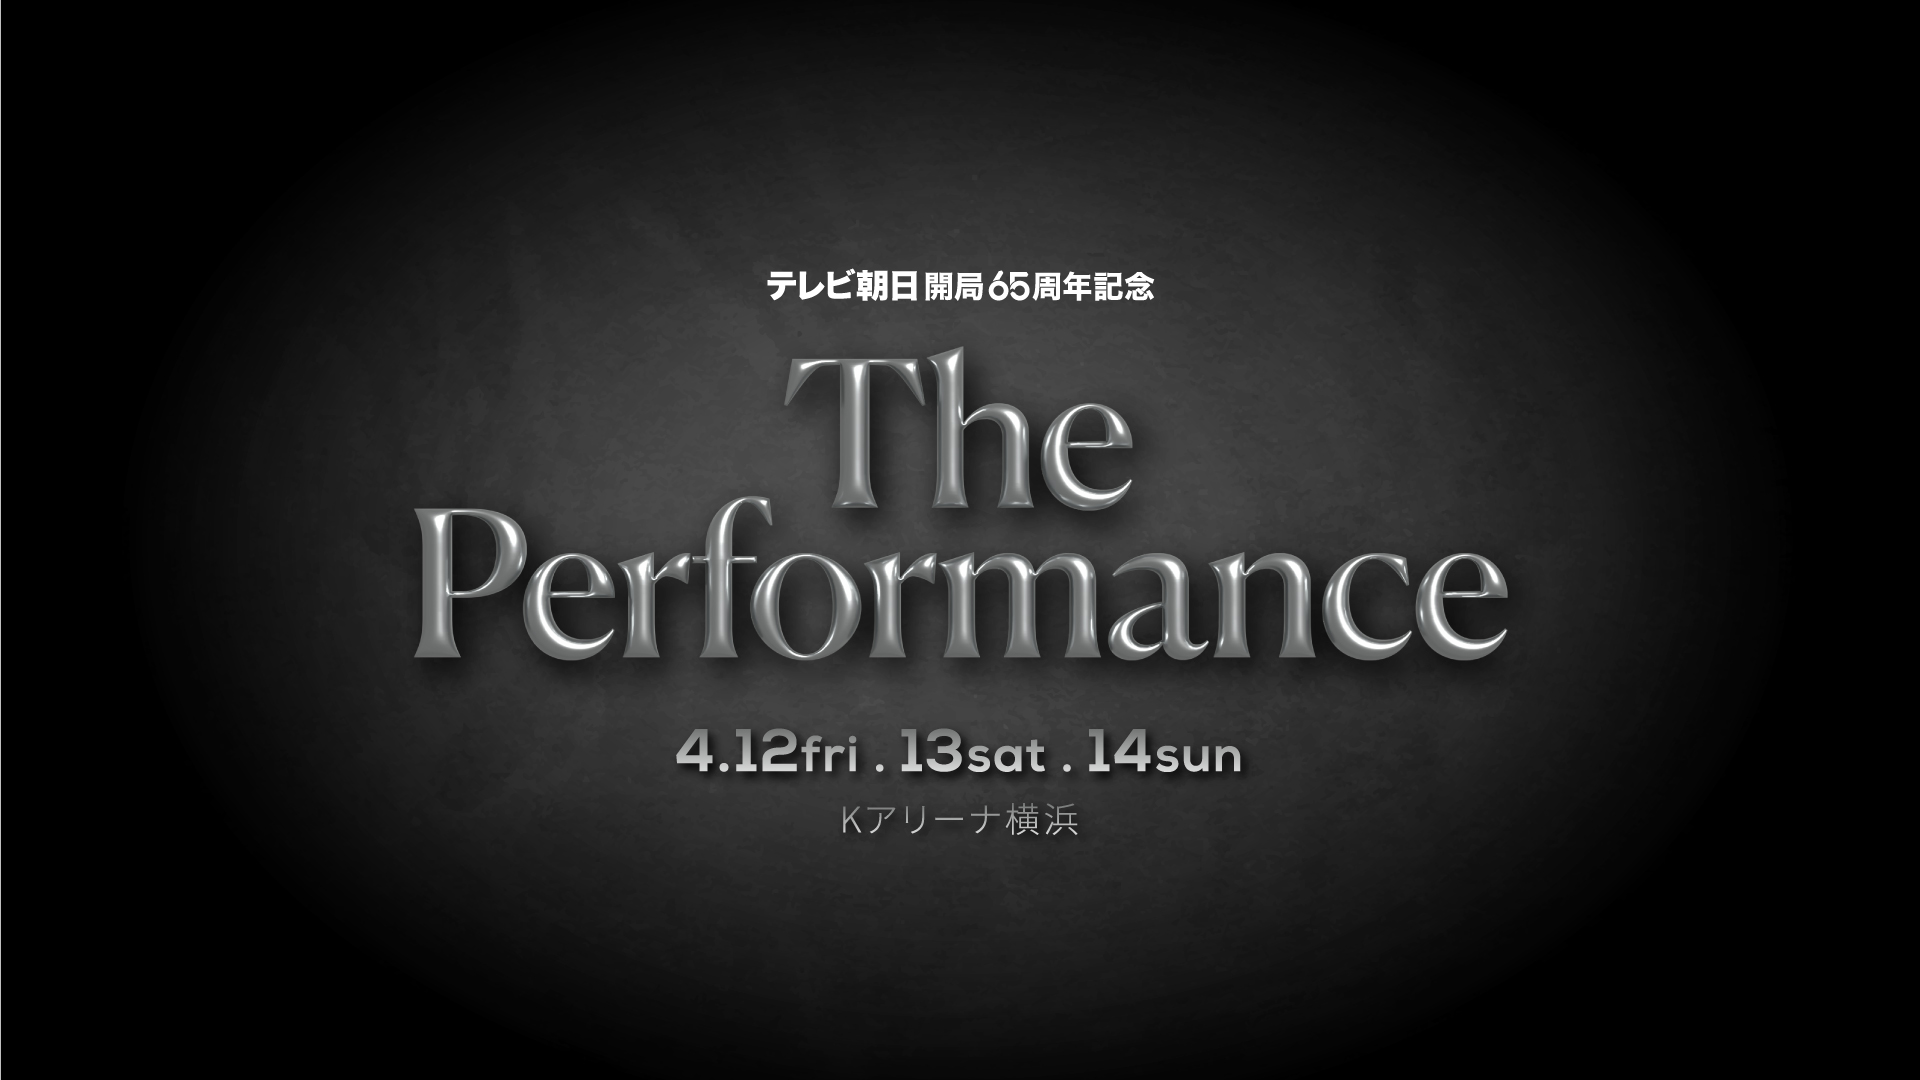 テレビ朝日開局65周年記念「The Performance」